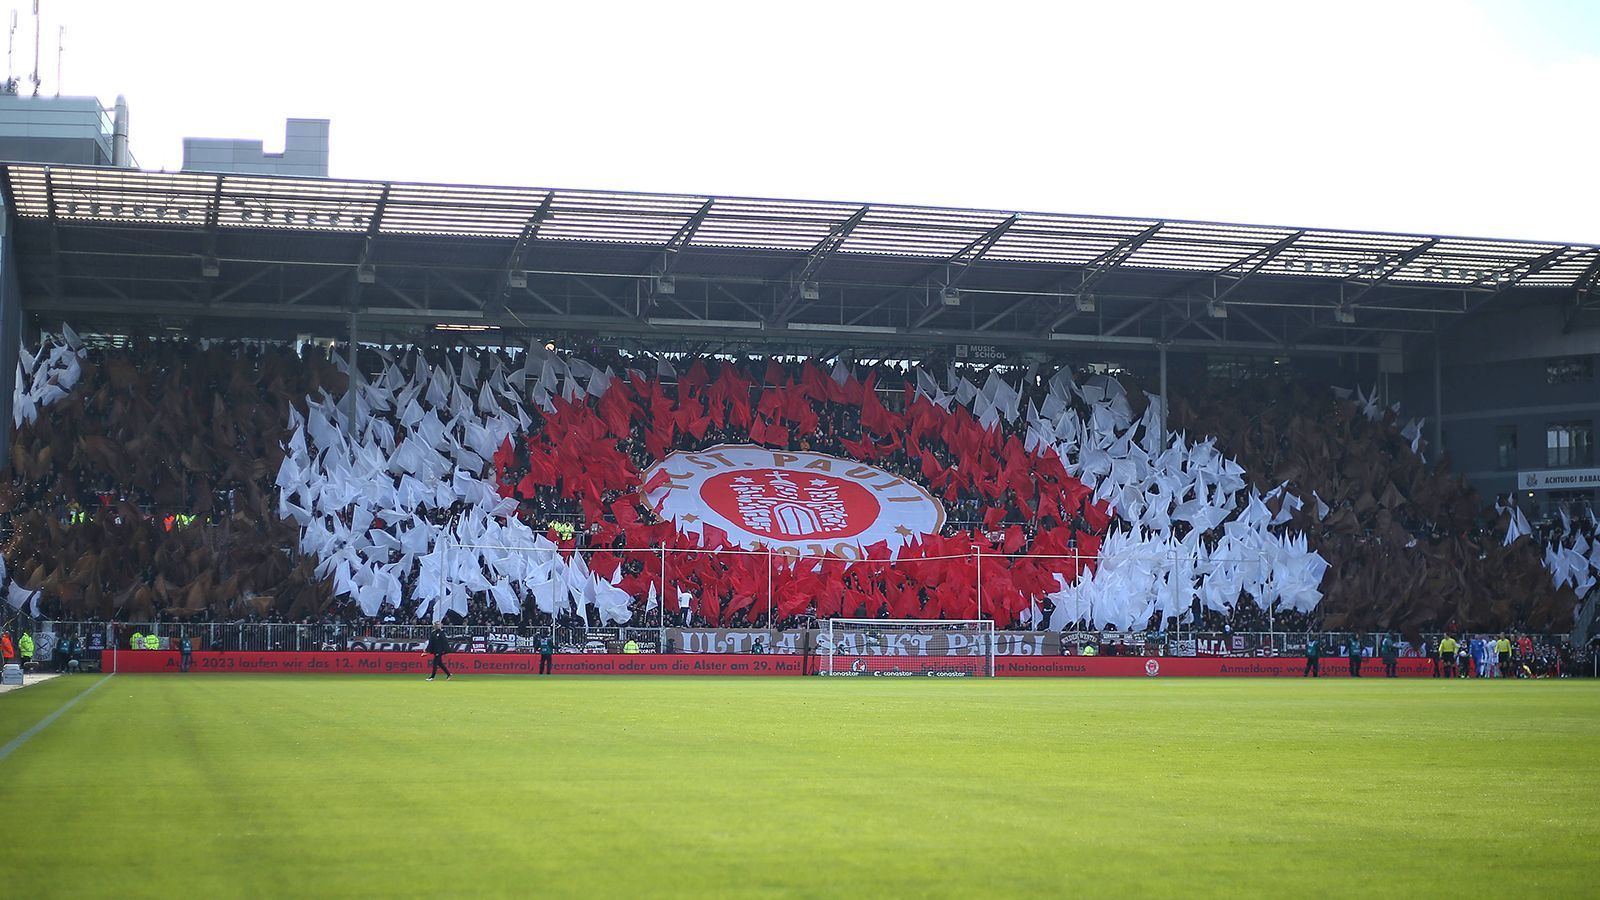 
                <strong>FC St. Pauli</strong><br>
                Abneigung kann auch vereinen, wie der Ursprung der Fan-Freundschaft zwischen Bayern-Fans und Anhängern des FC St. Pauli zeigt. Beide Lager mochten den Hamburger SV nicht und so unterstützen die Fans von St. Pauli den FC Bayern bei seinen Auswärtsspielen. Als 2003 nach einer eskalierten Meisterschaftsfeier den Fans des FCB Dauerkarten entzogen wurden, bekamen sie Unterstützung aus der Ferne. Das sogenannte "Retterspiel" gab es ebenfalls. Ebenfalls 2003 stand der Klub aus dem Norden kurz vor der Insolvenz – die Bayern halfen mit einem Freundschaftsspiel und trugen dazu bei, dass Pauli die Insolvenz abwenden konnte.
              